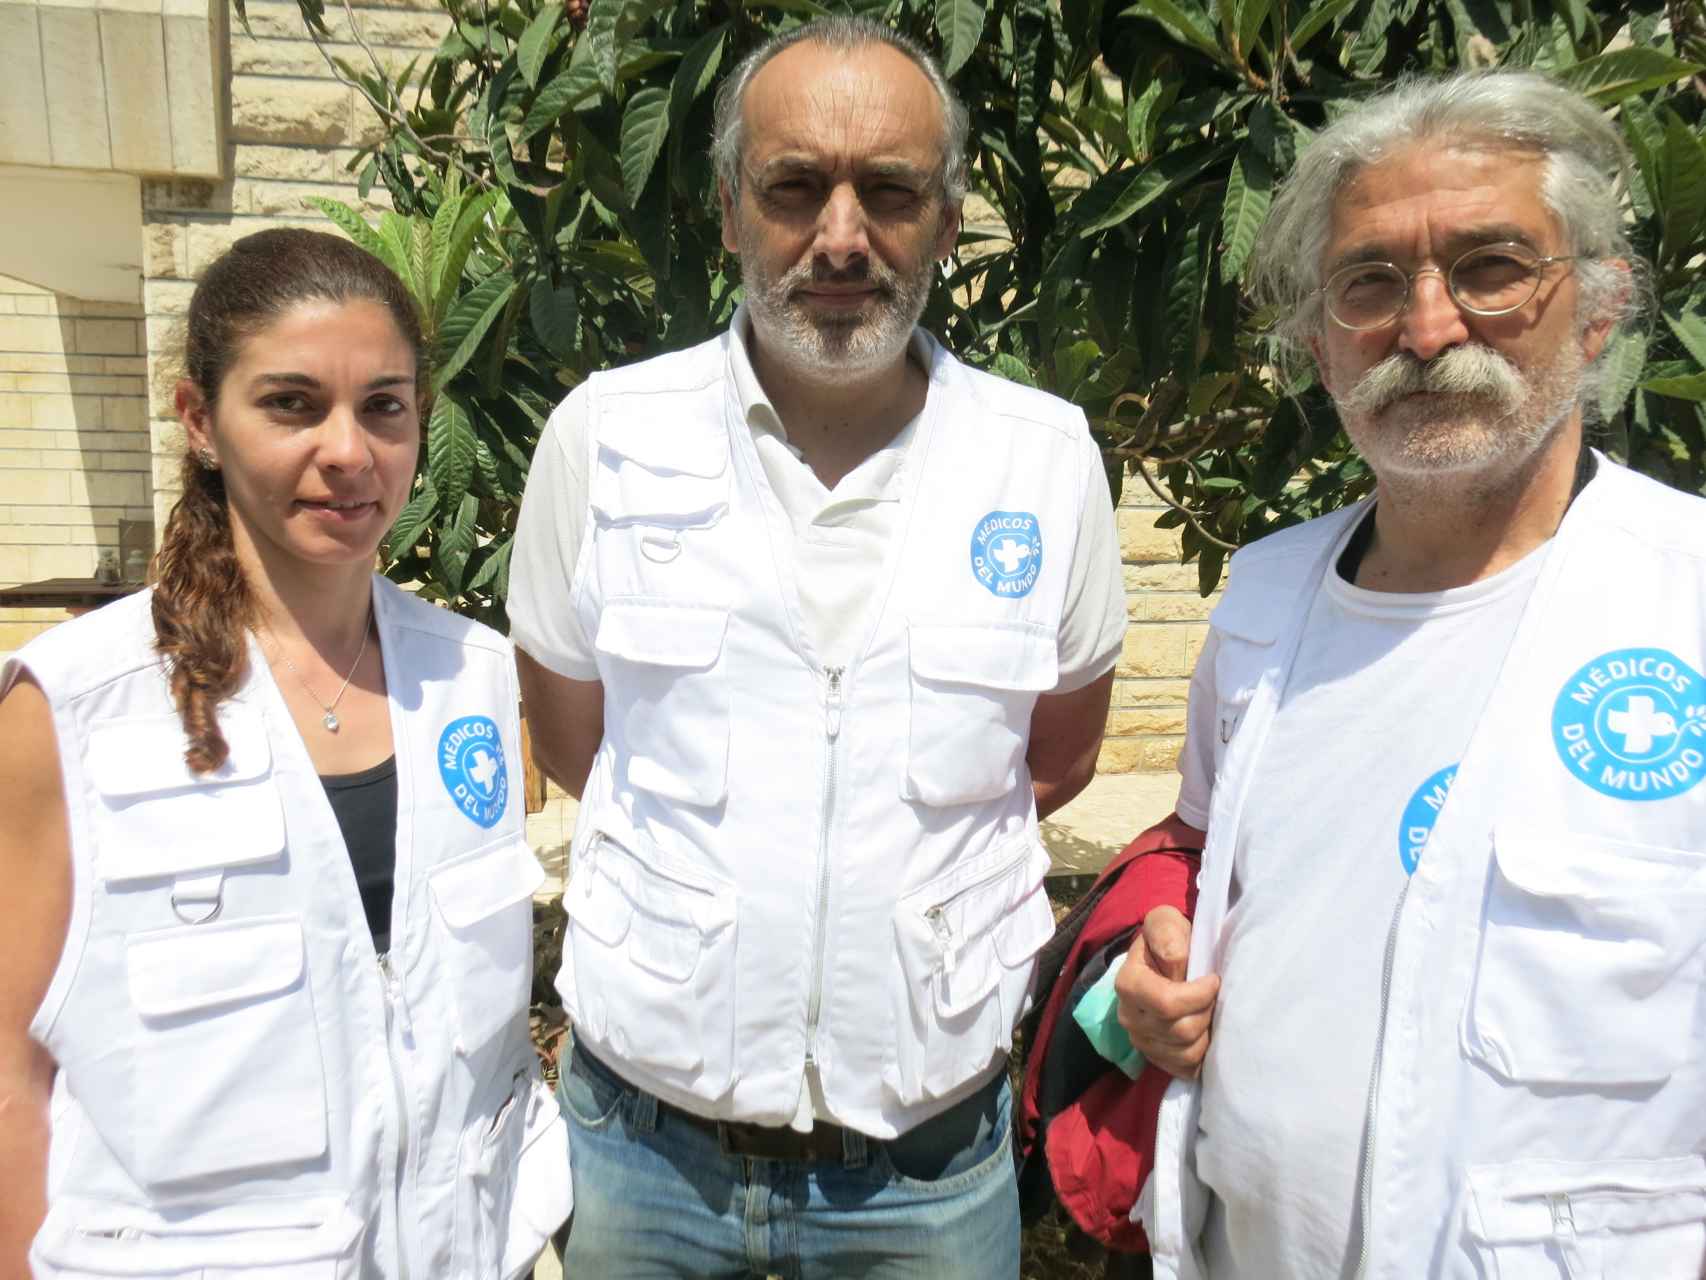 Morcillo, Noya y Altarriba son el equipo español de MDM desplazado a Gaza en esta misión.